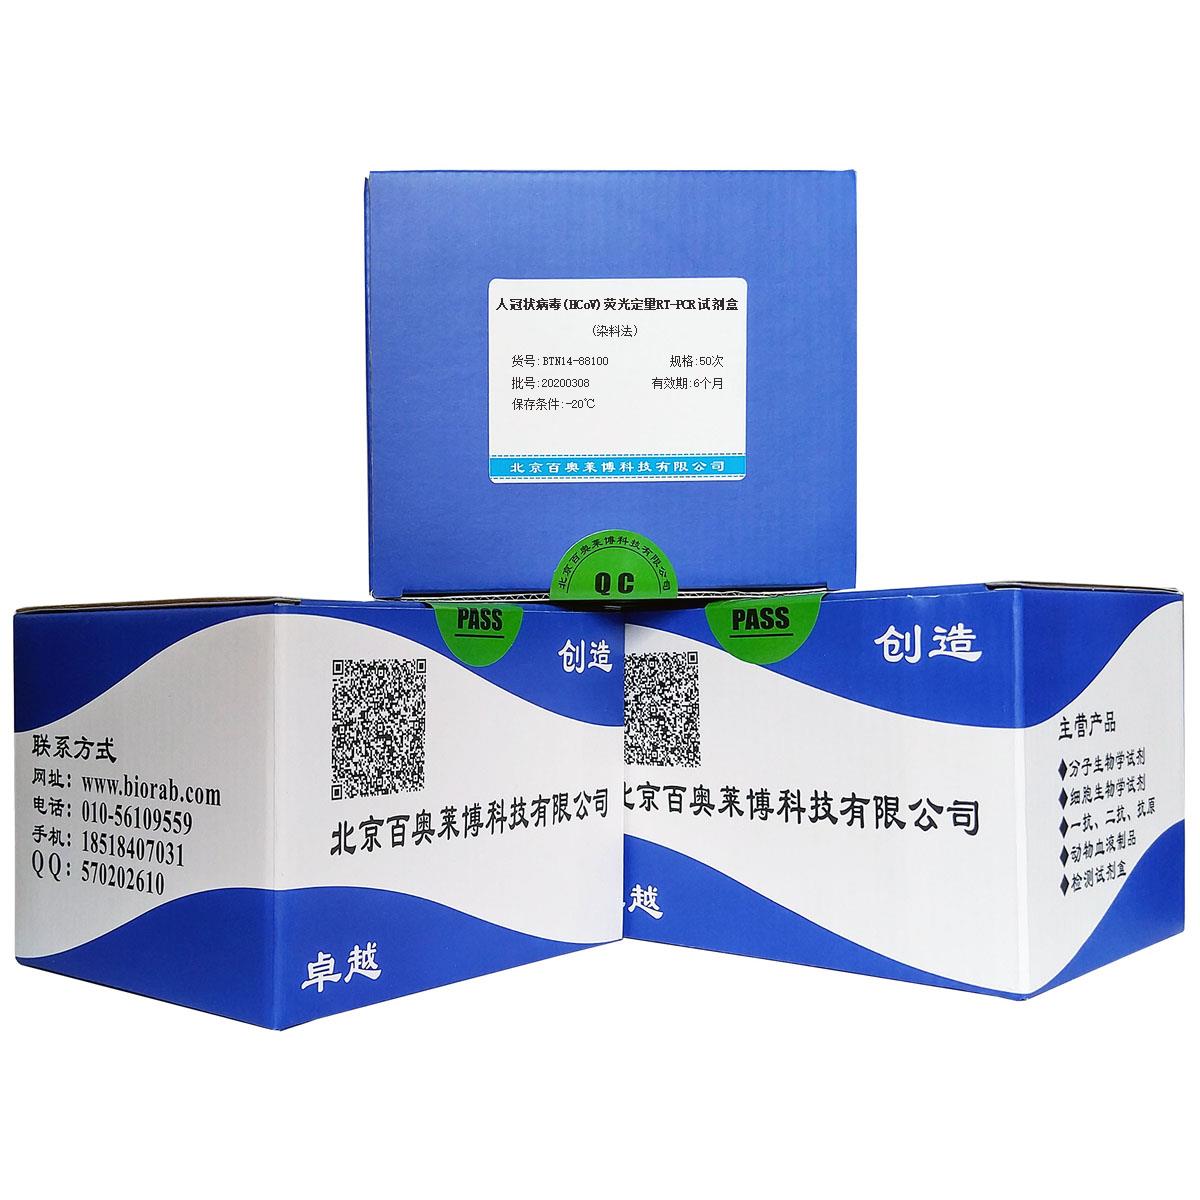 人冠状病毒(HCoV)荧光定量RT-PCR试剂盒(染料法)